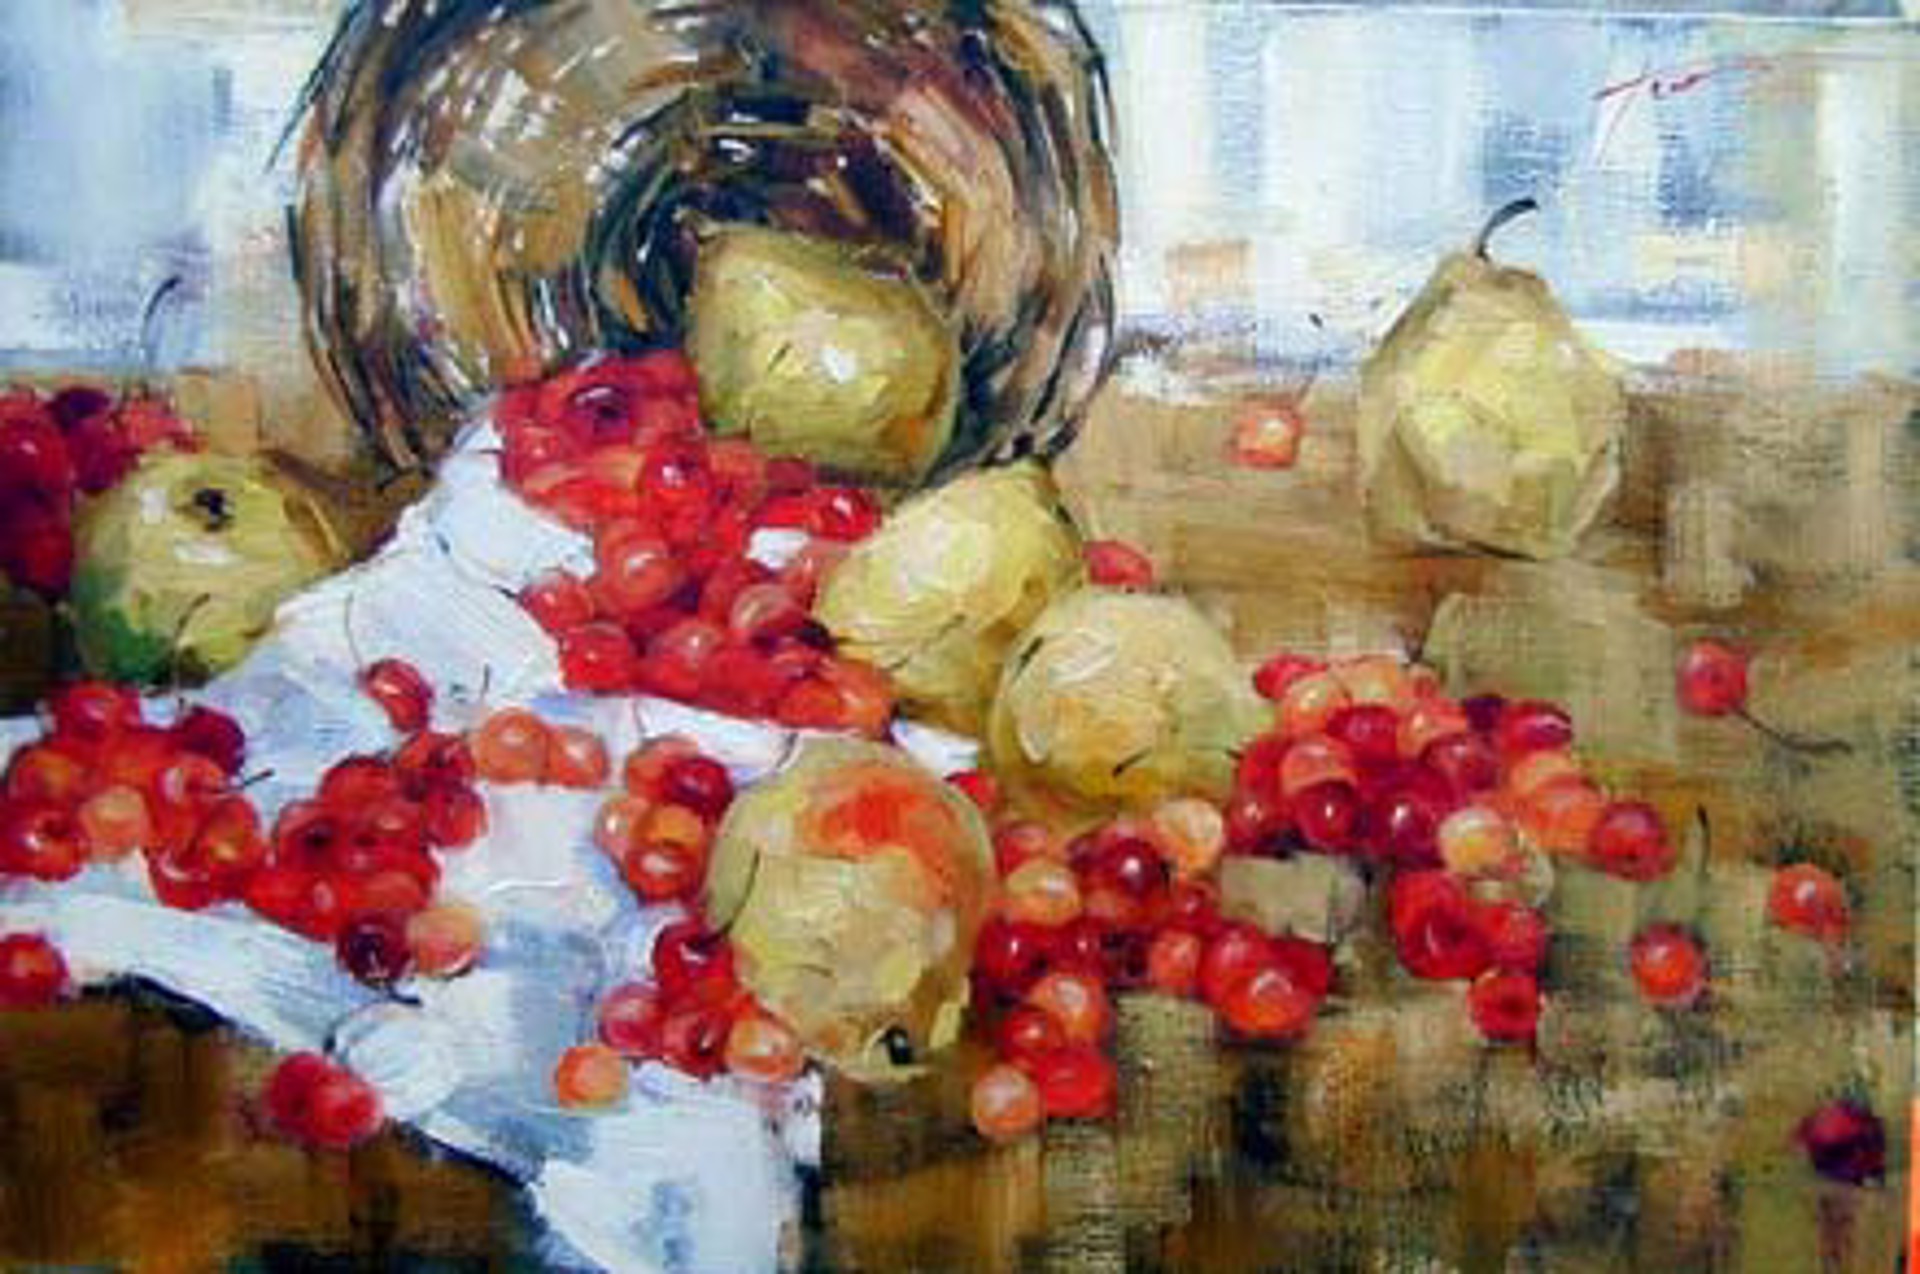 Yellow Pears by Yana Golubyatnikova